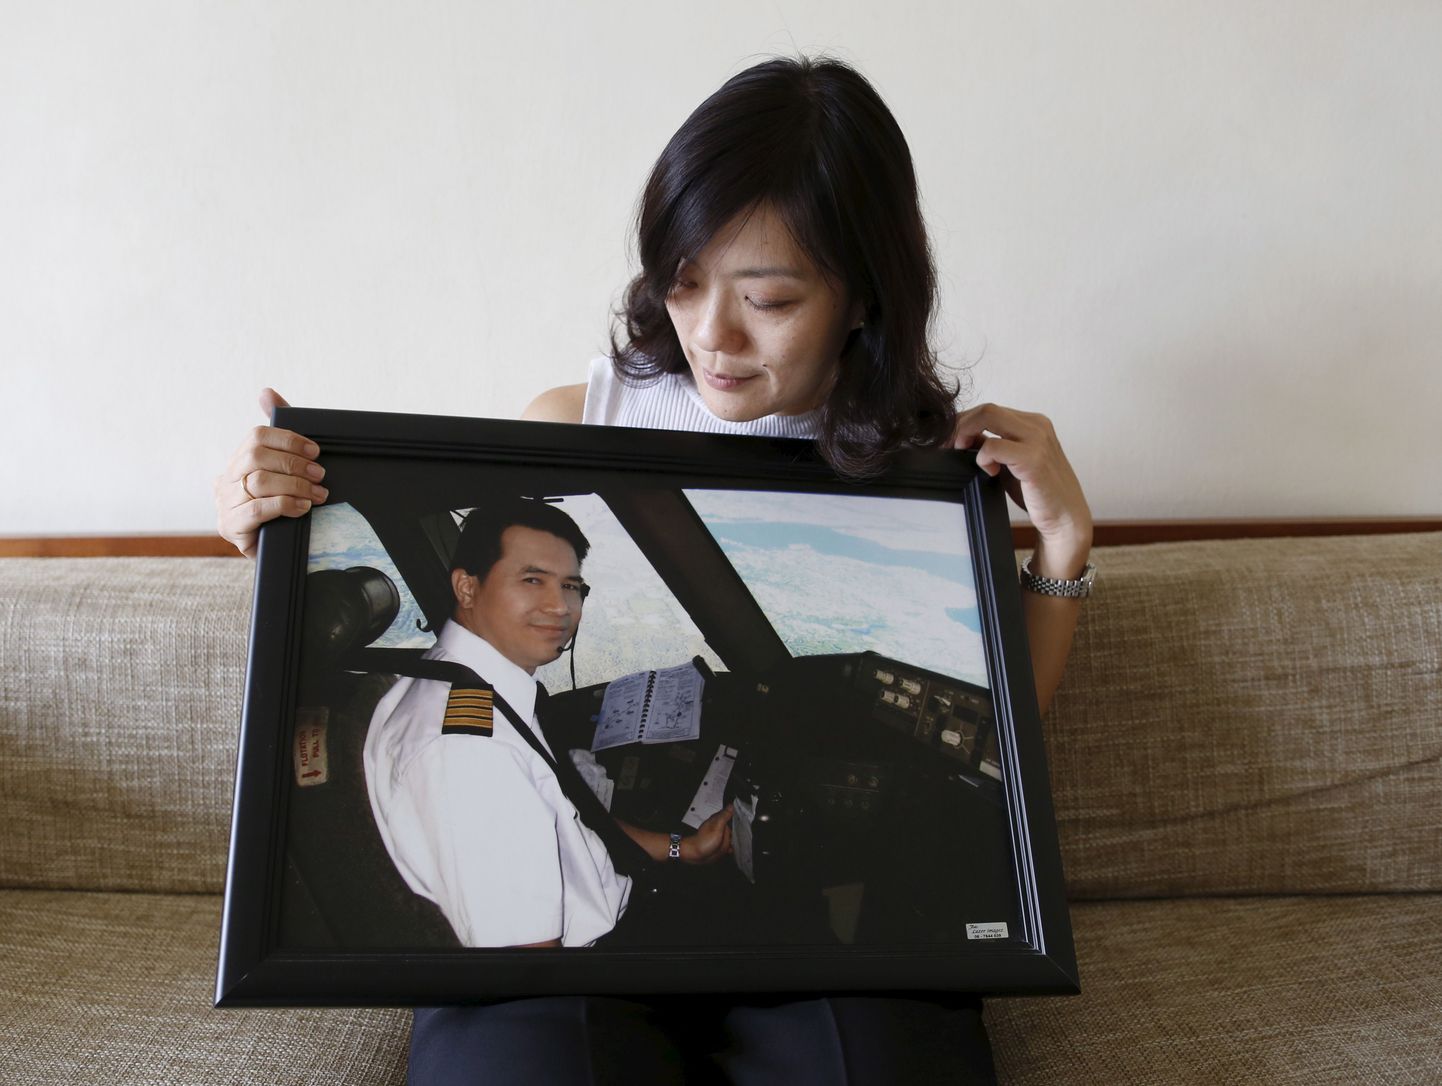 Malaysia Airlinesi piloodi Eugene Choo lesk Ivy Loi näitamas oma mehe fotot